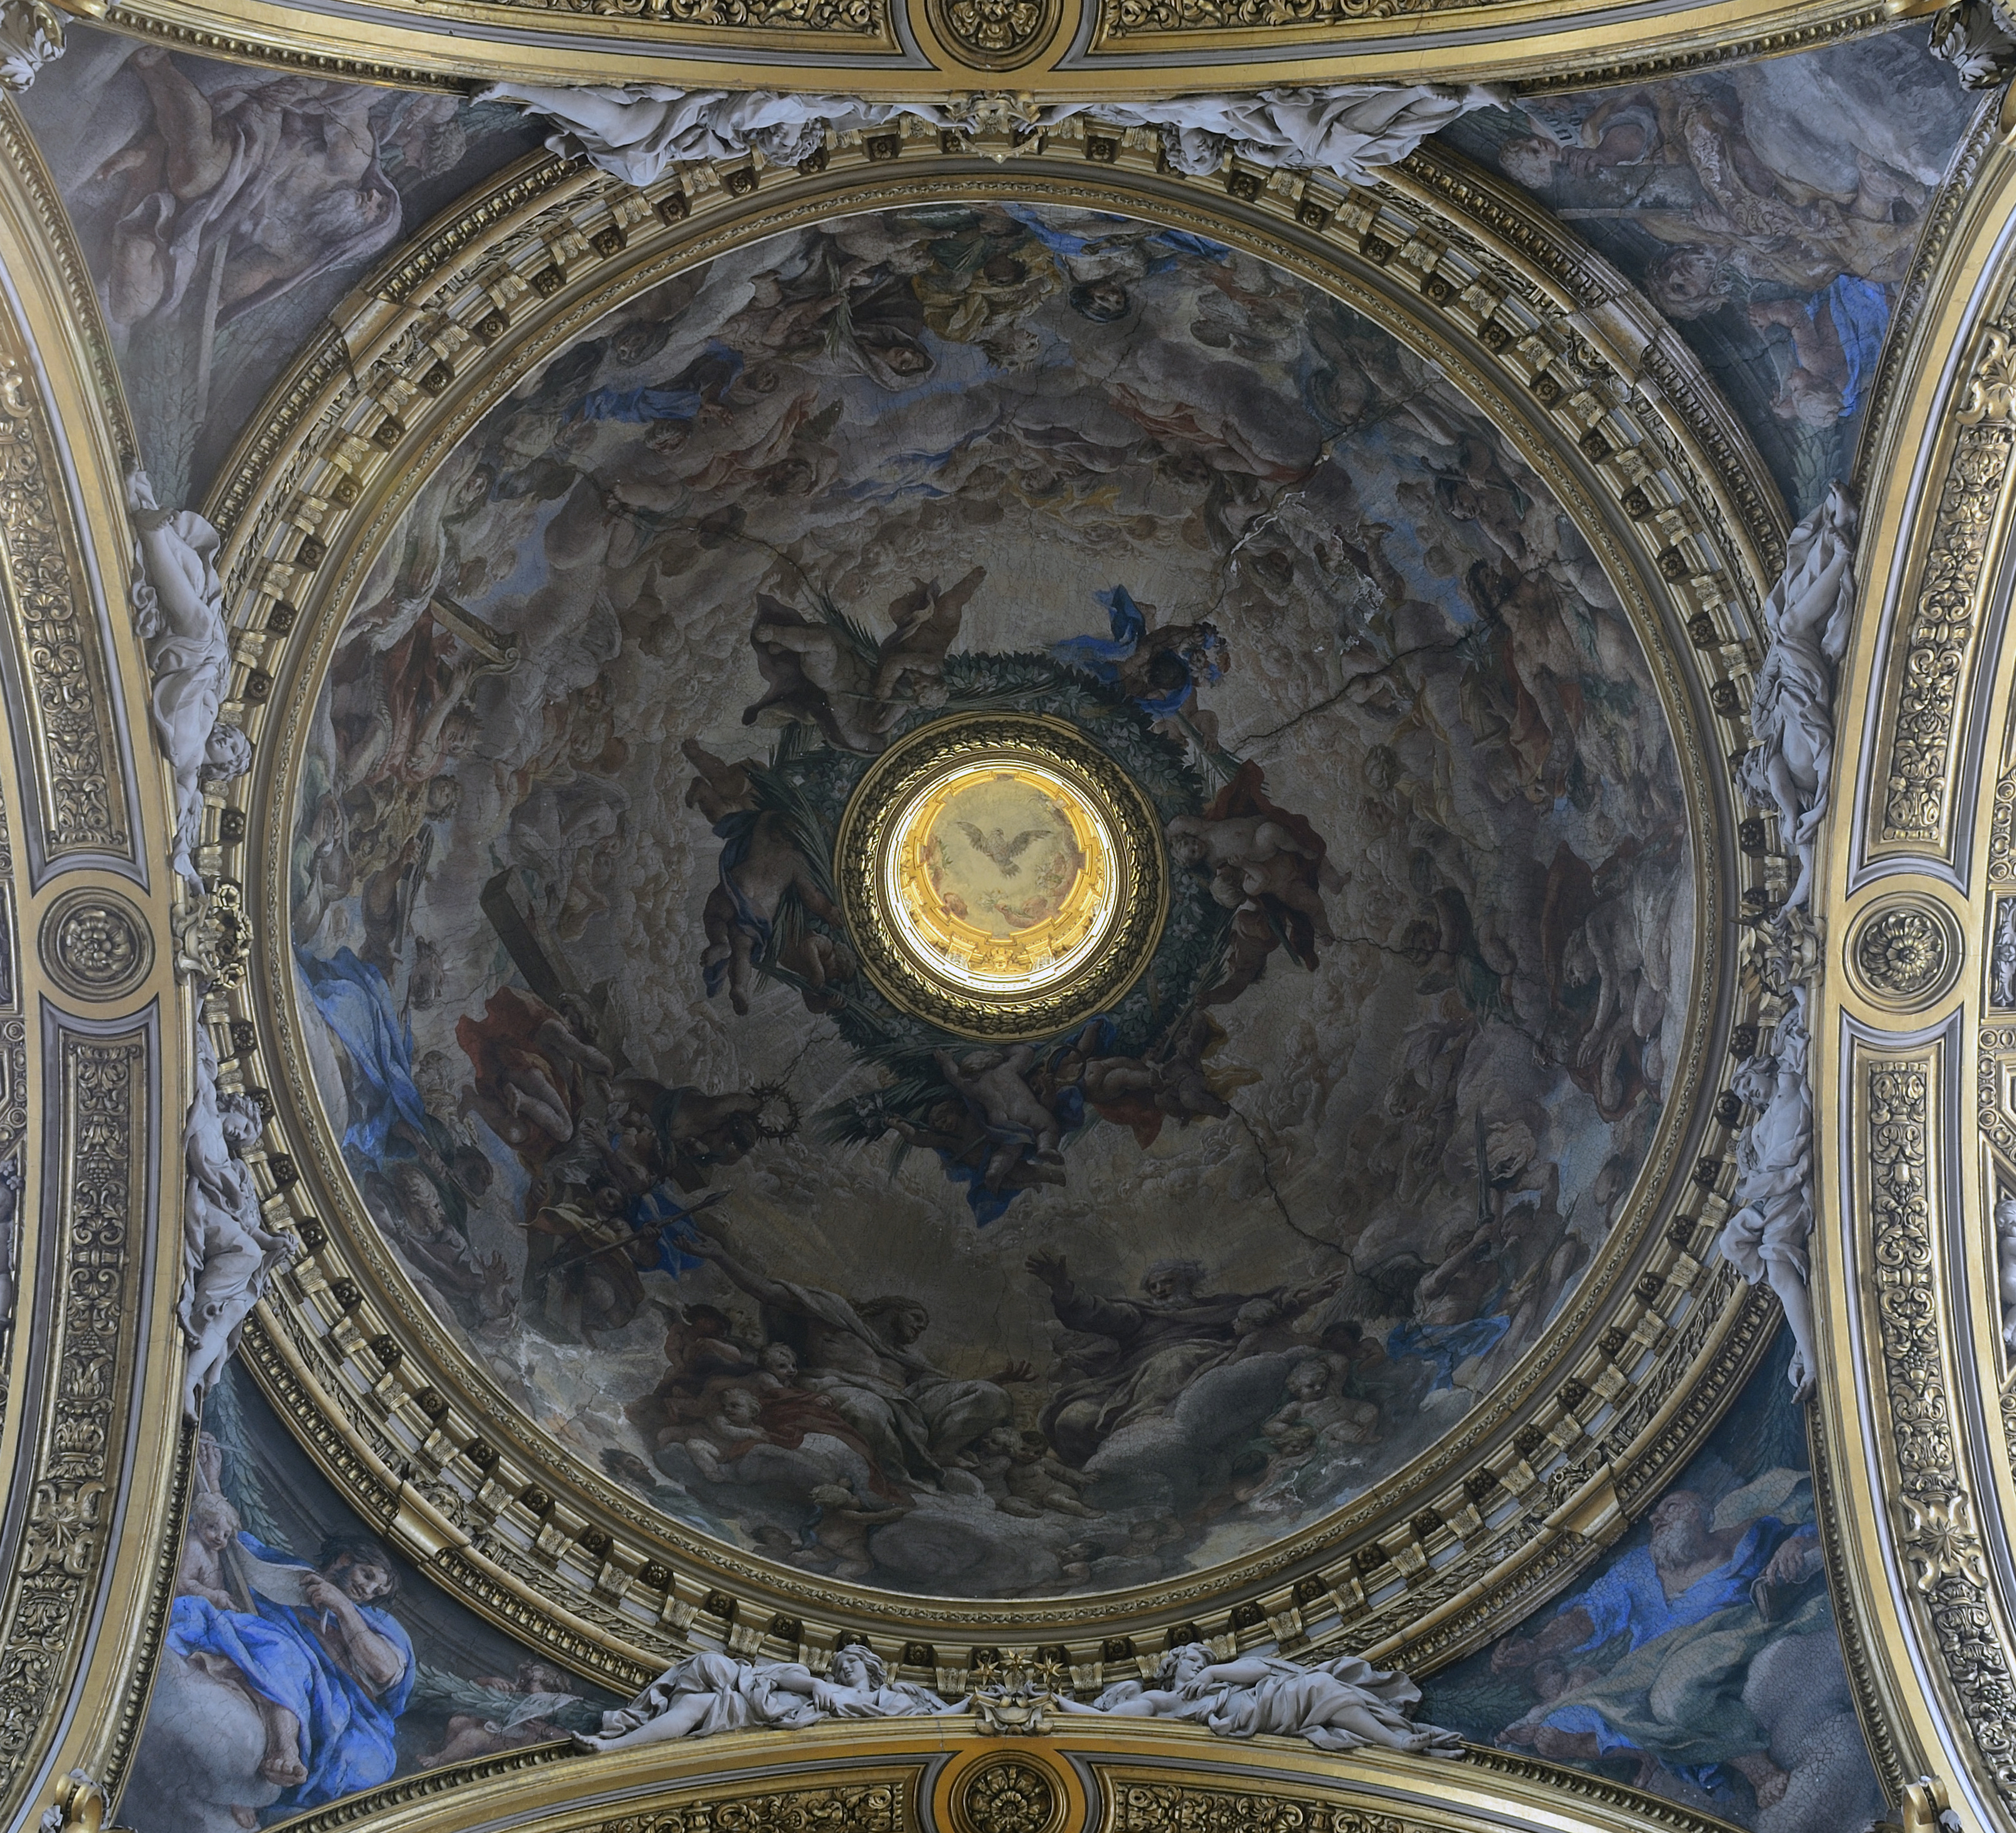 Dome of Santa Maria in Vallicella (Rome)